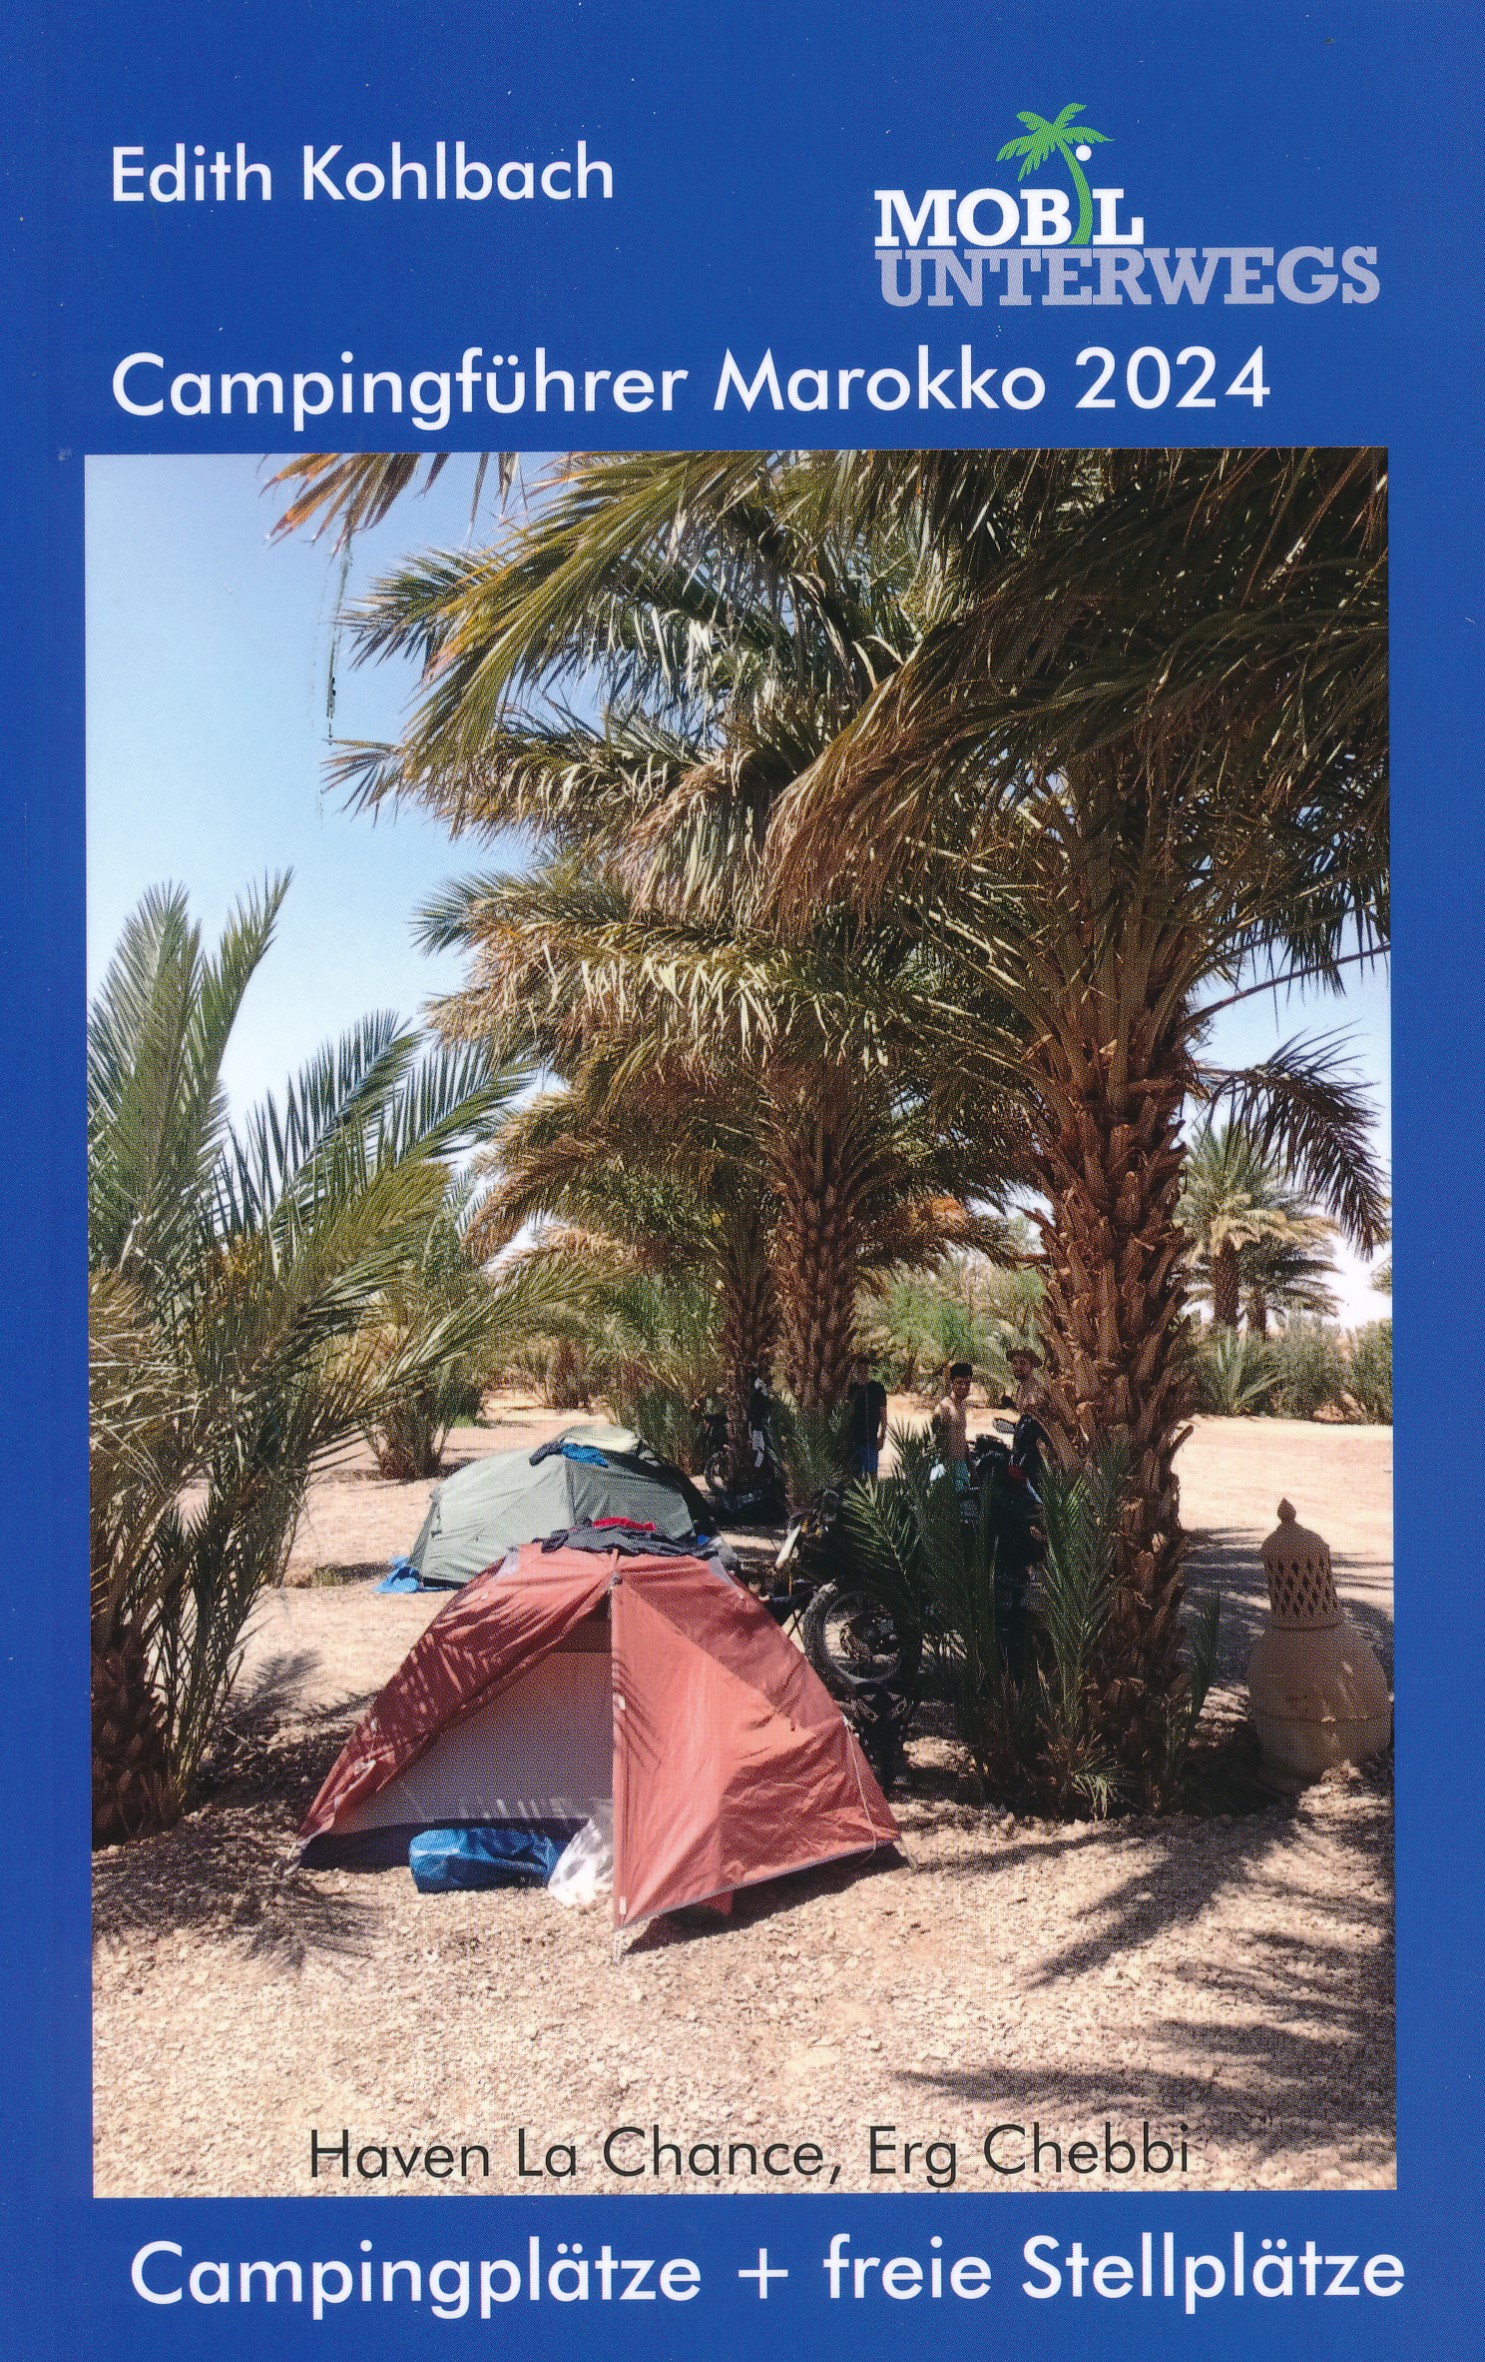 Online bestellen: Campergids Campingführer Marokko 2024 | Edith Kohlbach verlag